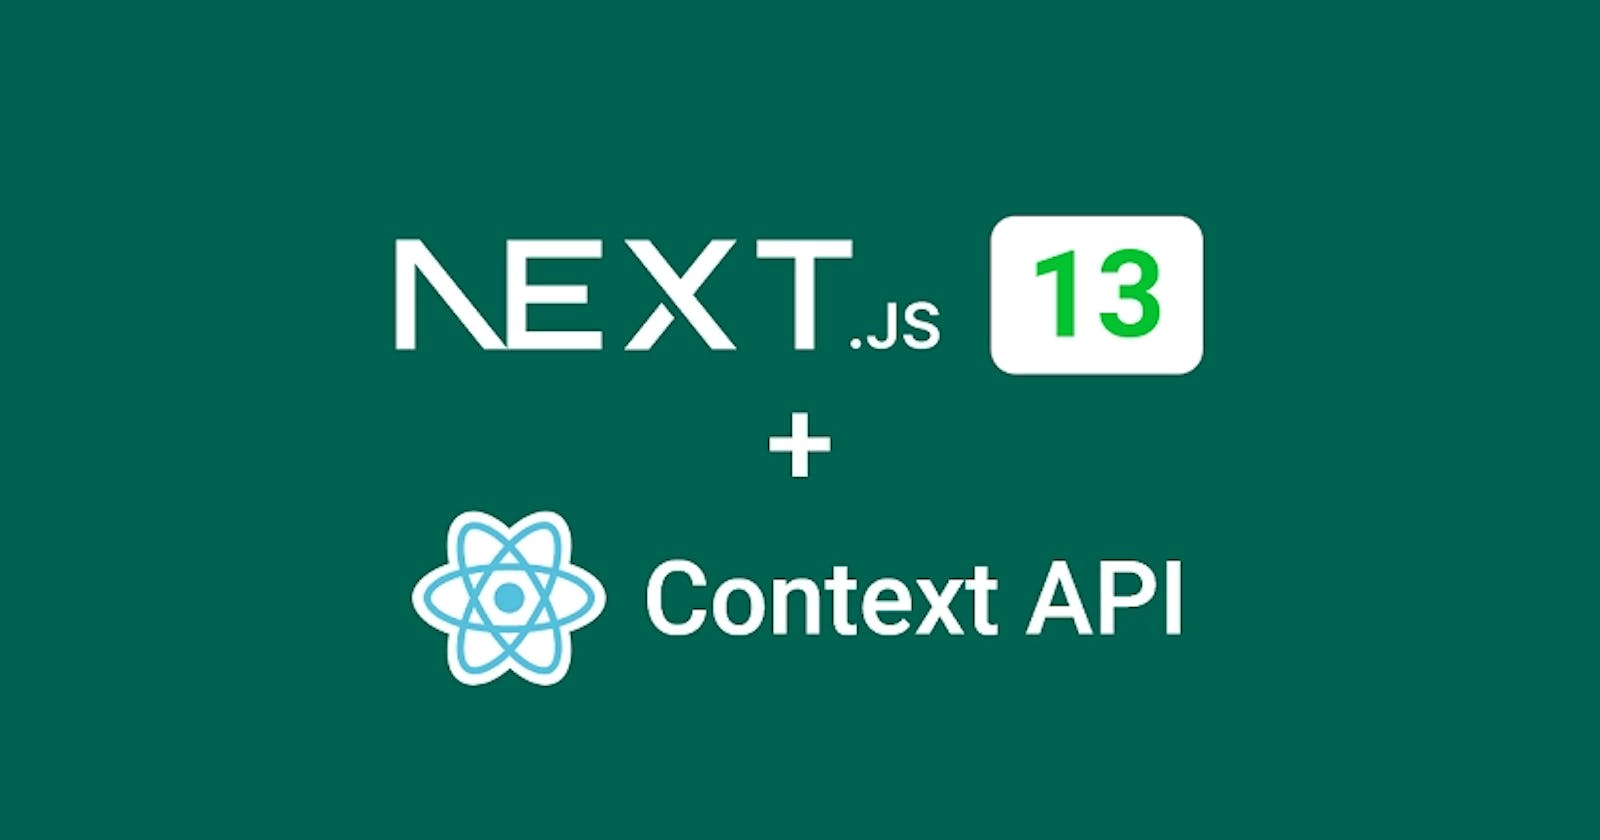 How to use React Context API with Next.js 13